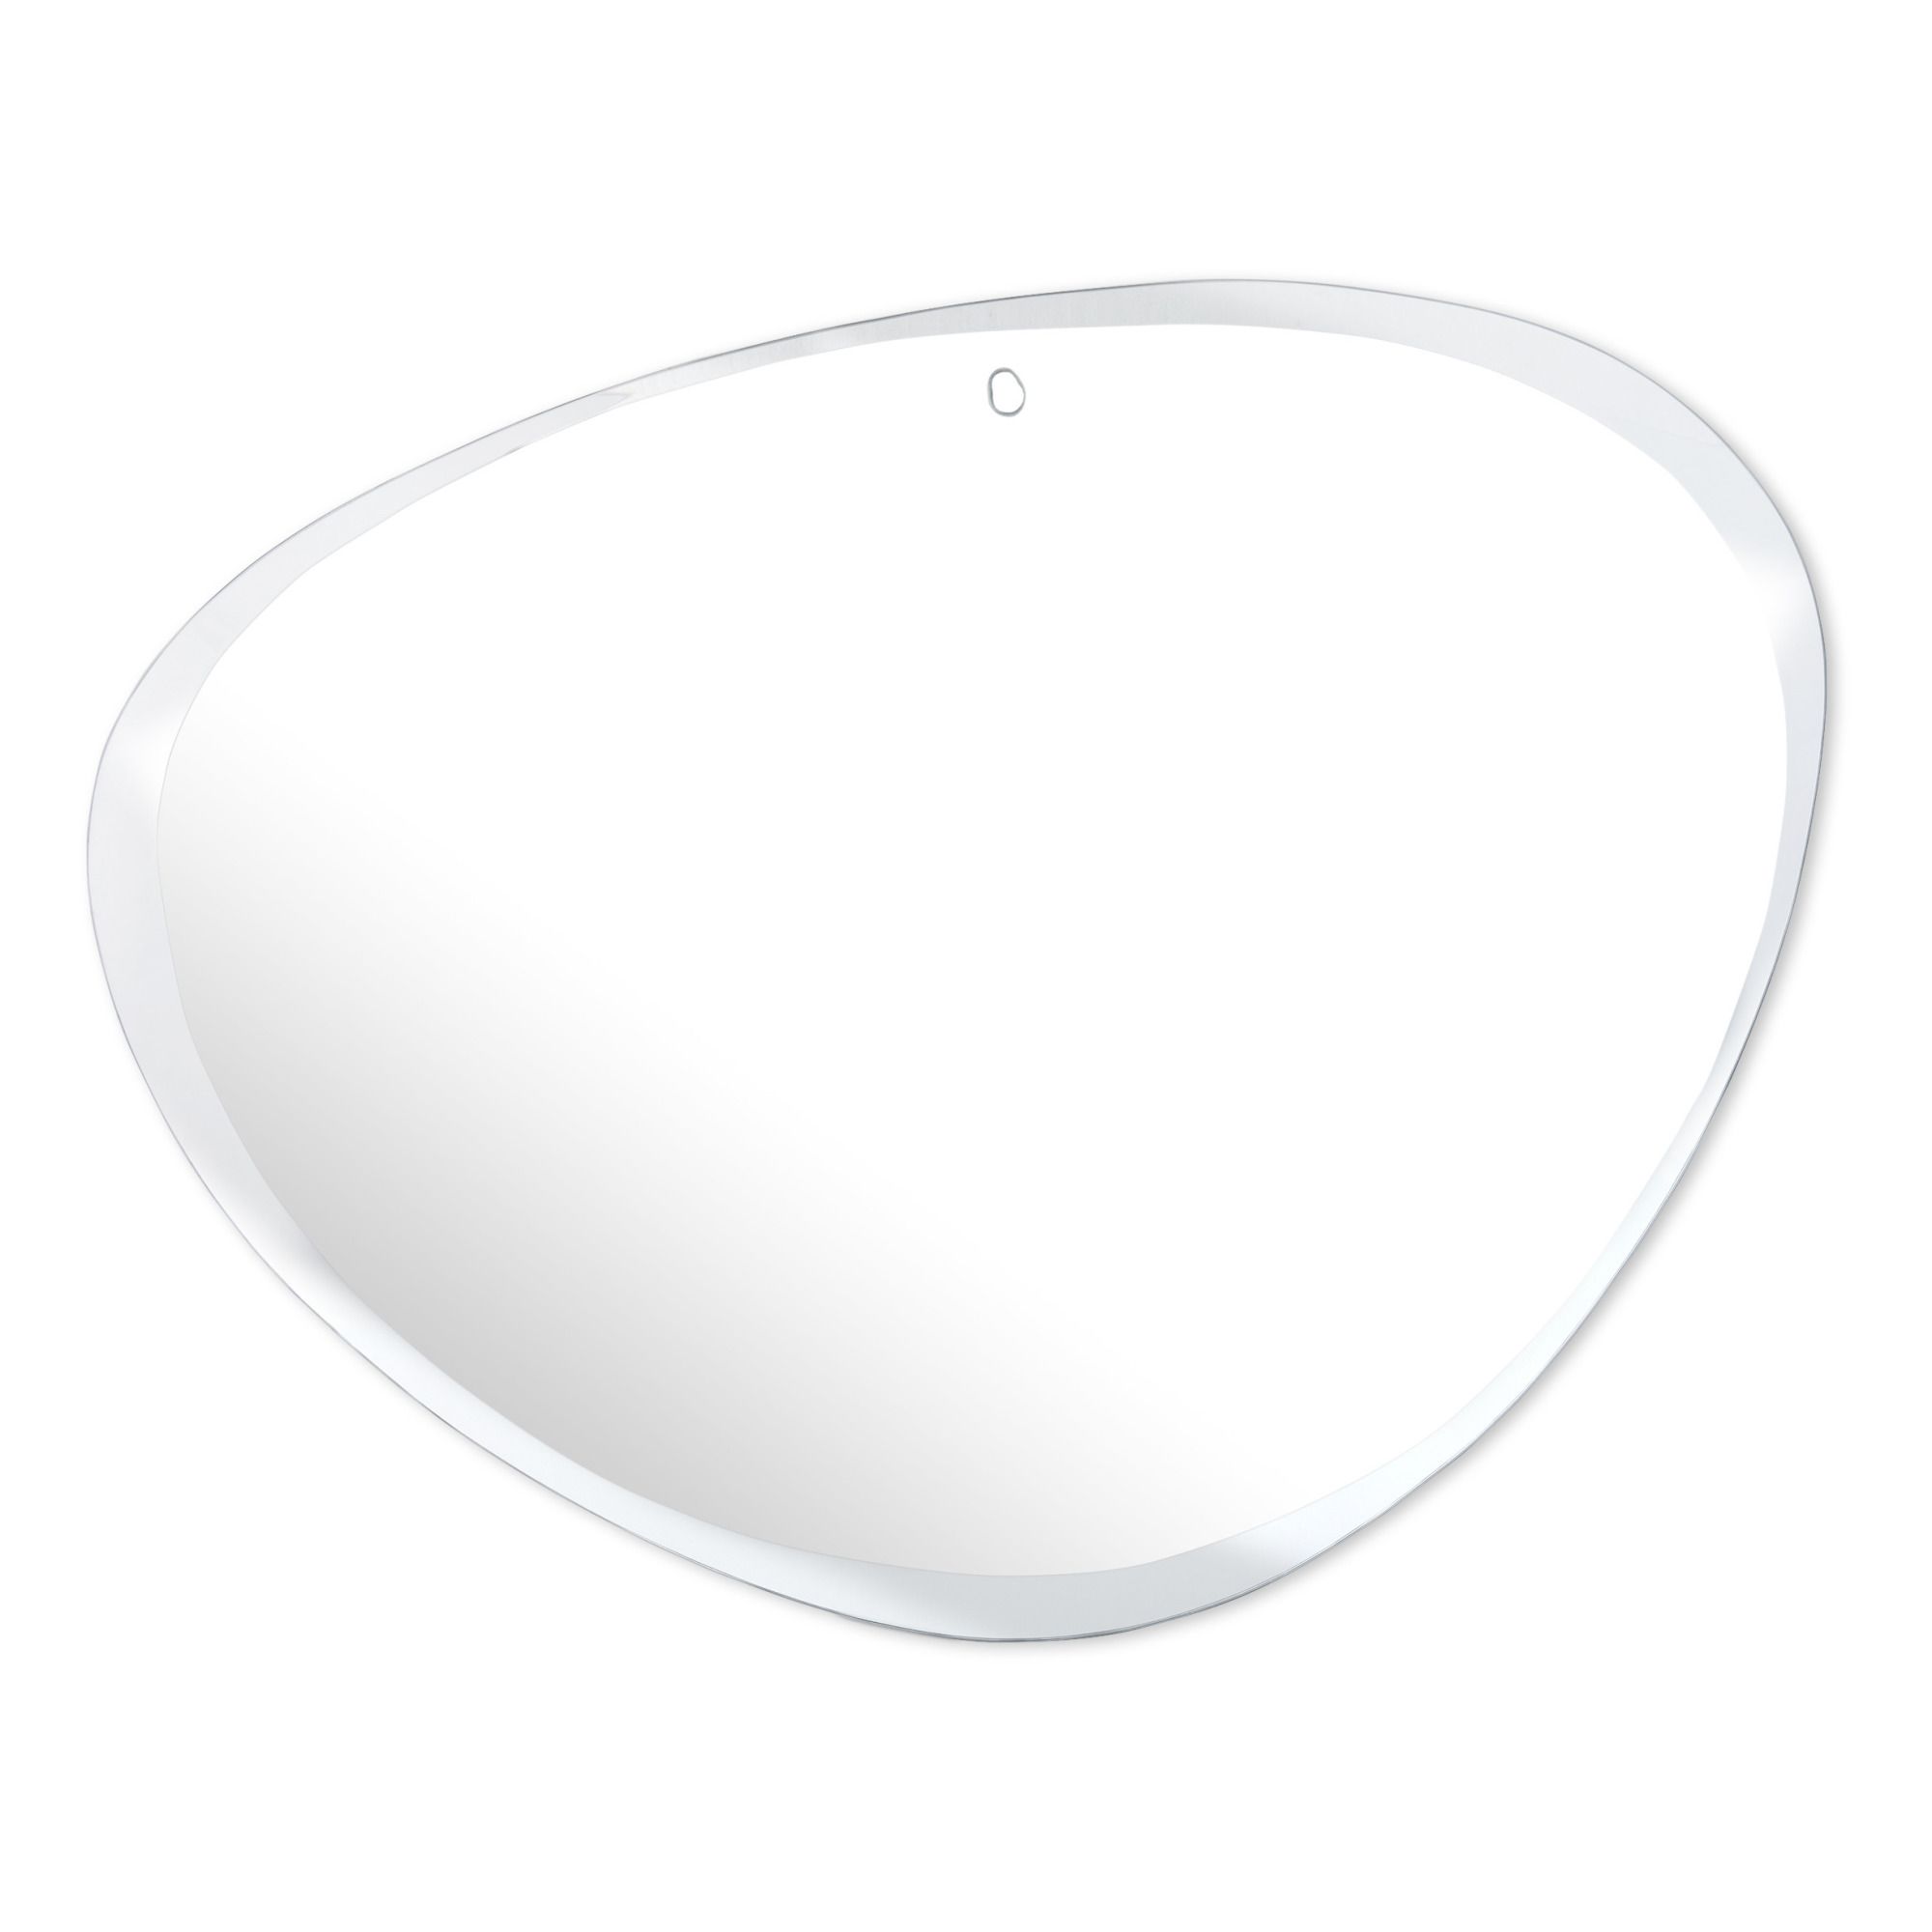 M Nuance - Miroir extra plat biseauté - forme aléatoire ovale 87x67 cm - Naturel